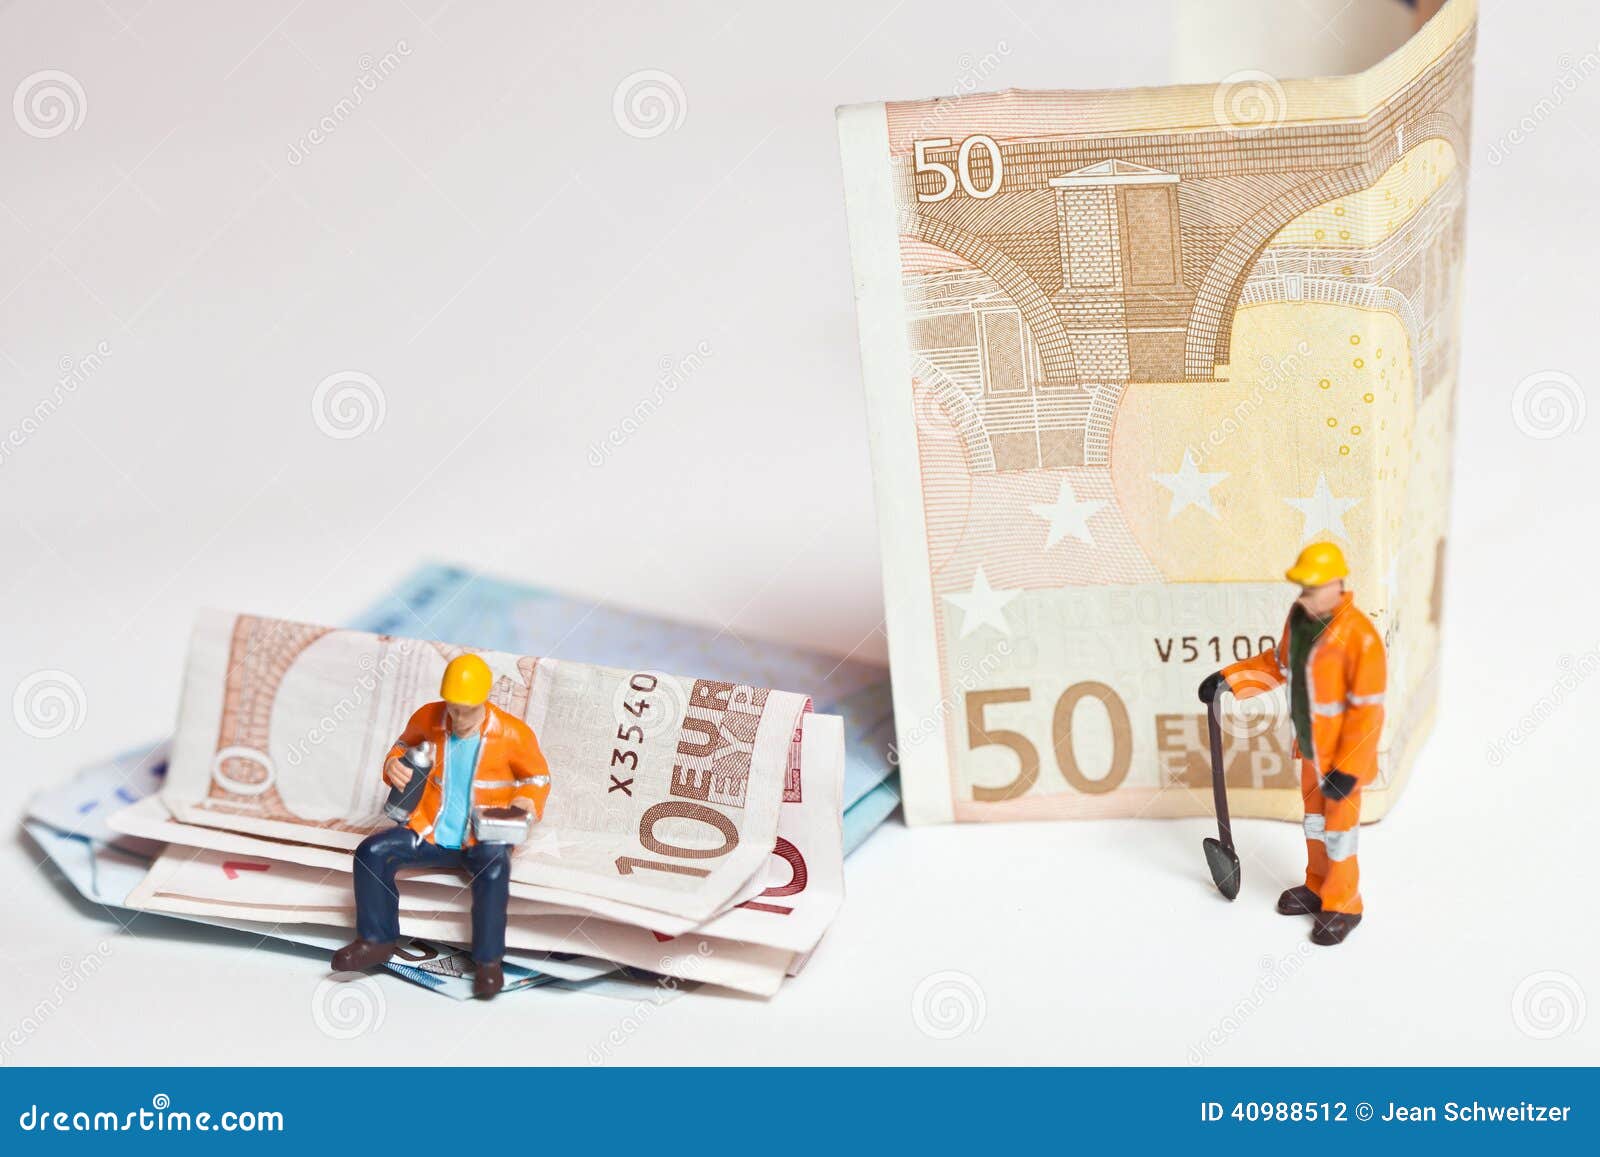 Personnes miniatures dans l'action avec d'euro billets de banque